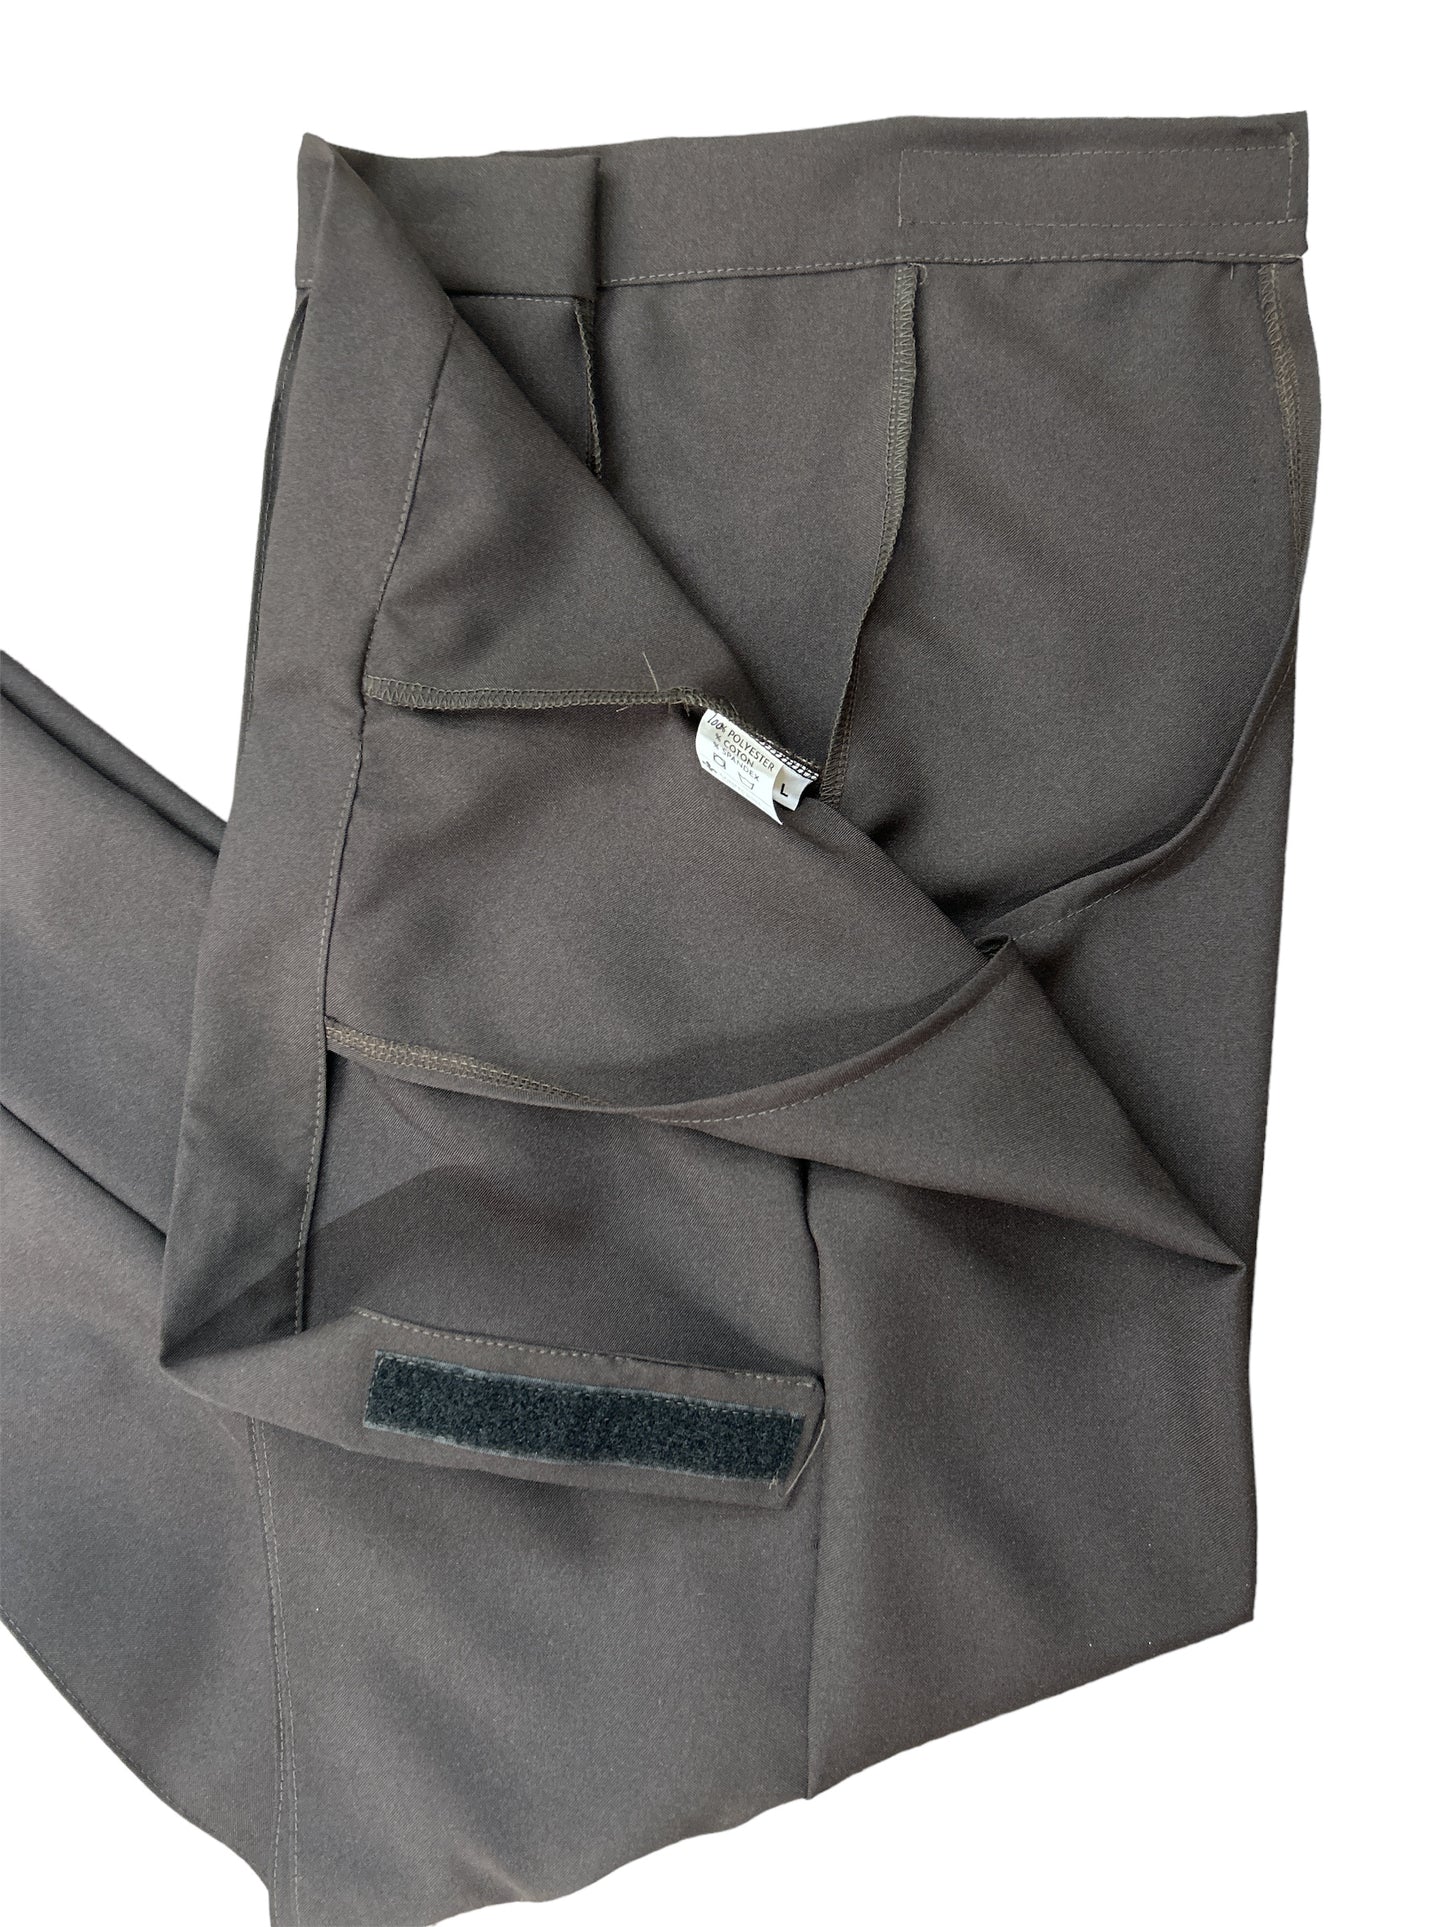 Pantalon sans fond, pour dame couleur café noir  | Mode Québécoise | A3B